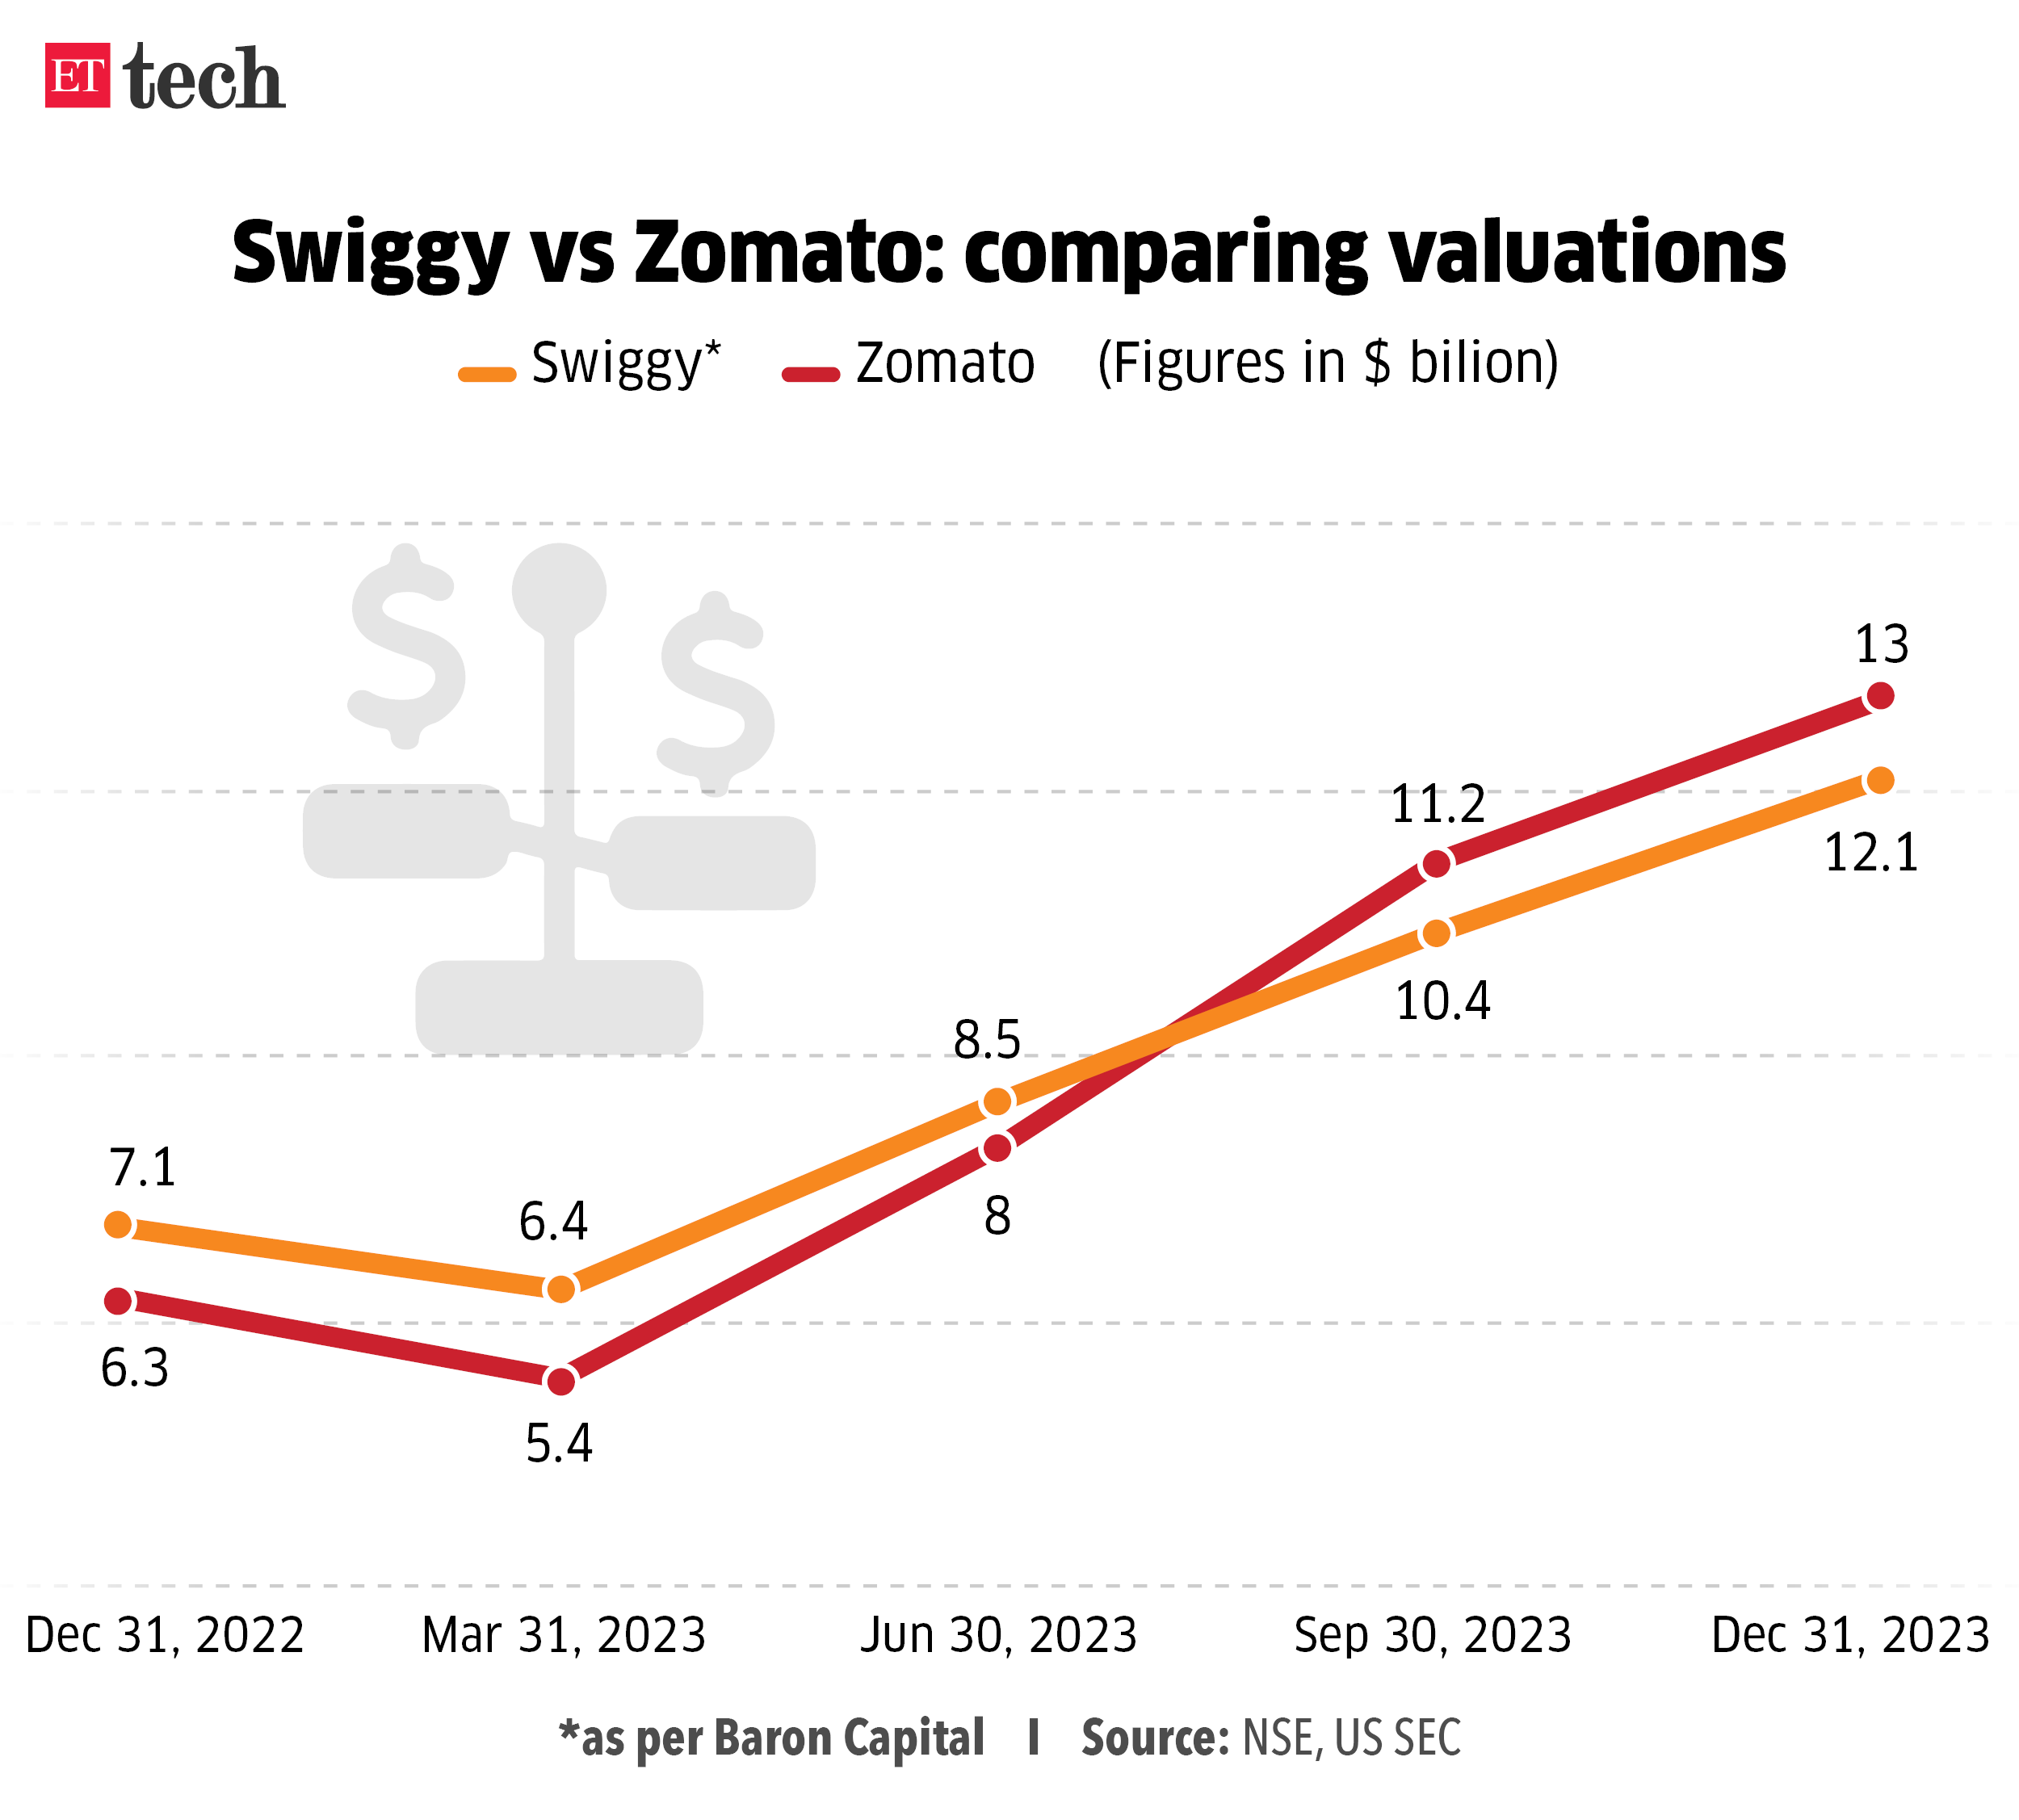 Swiggy vs Zomato comparing valuations